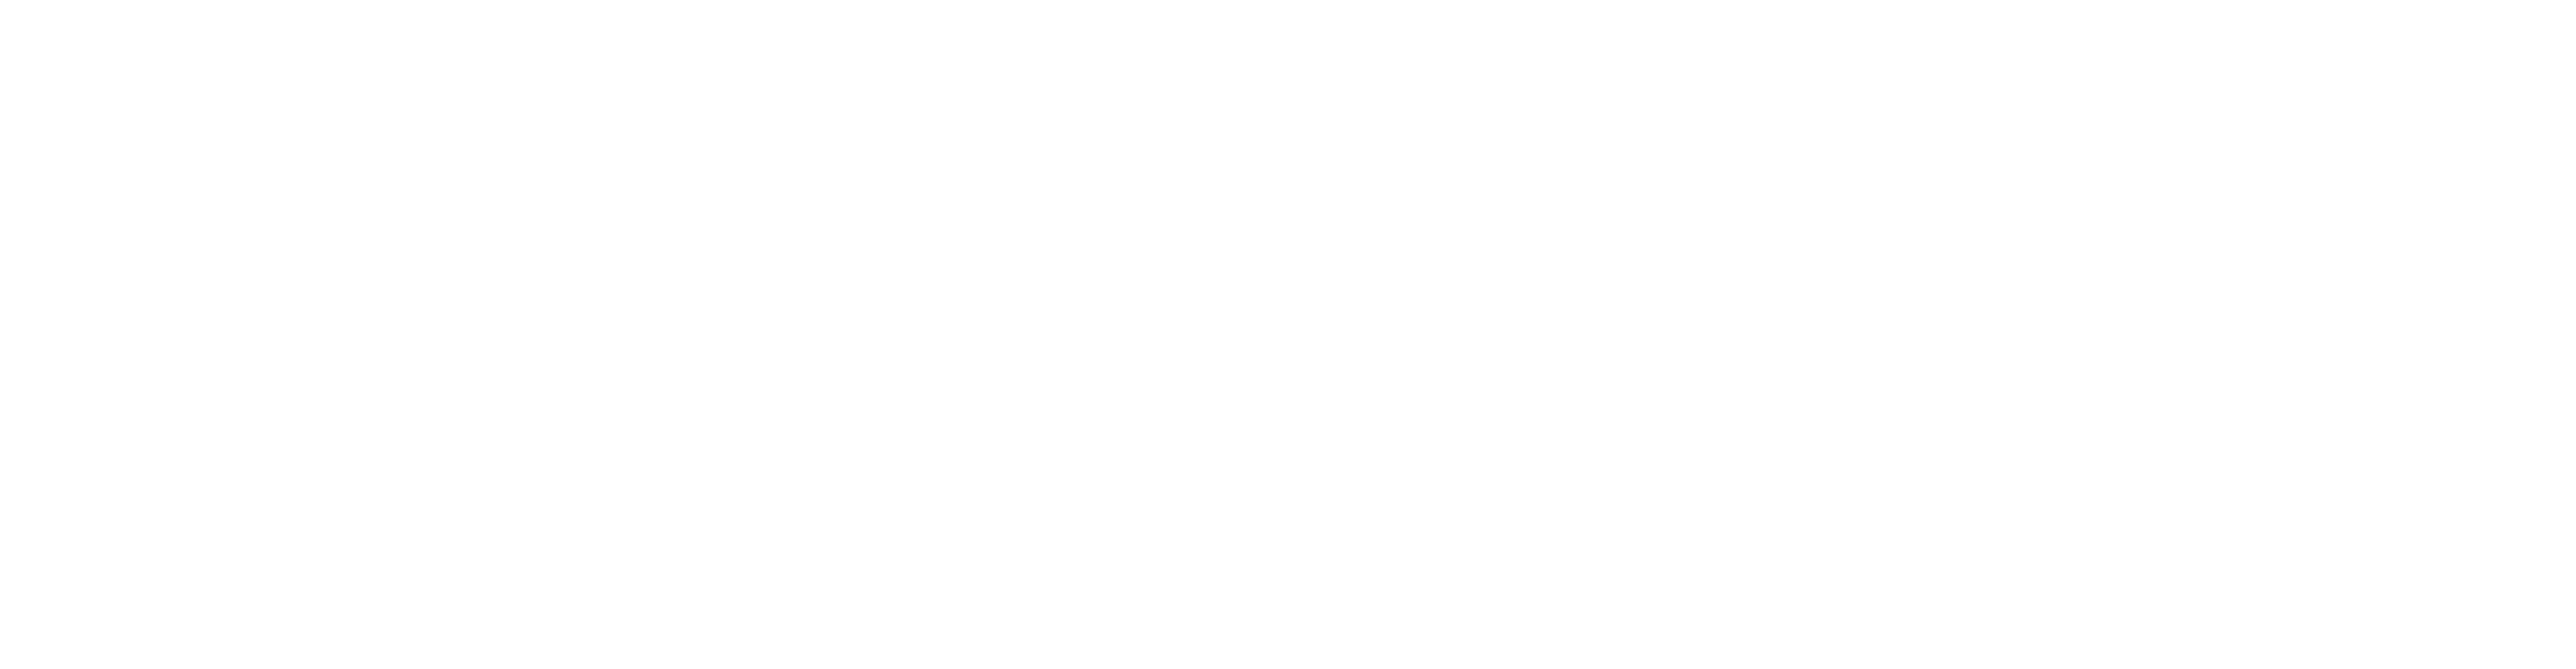 family resource center logo white horizontal